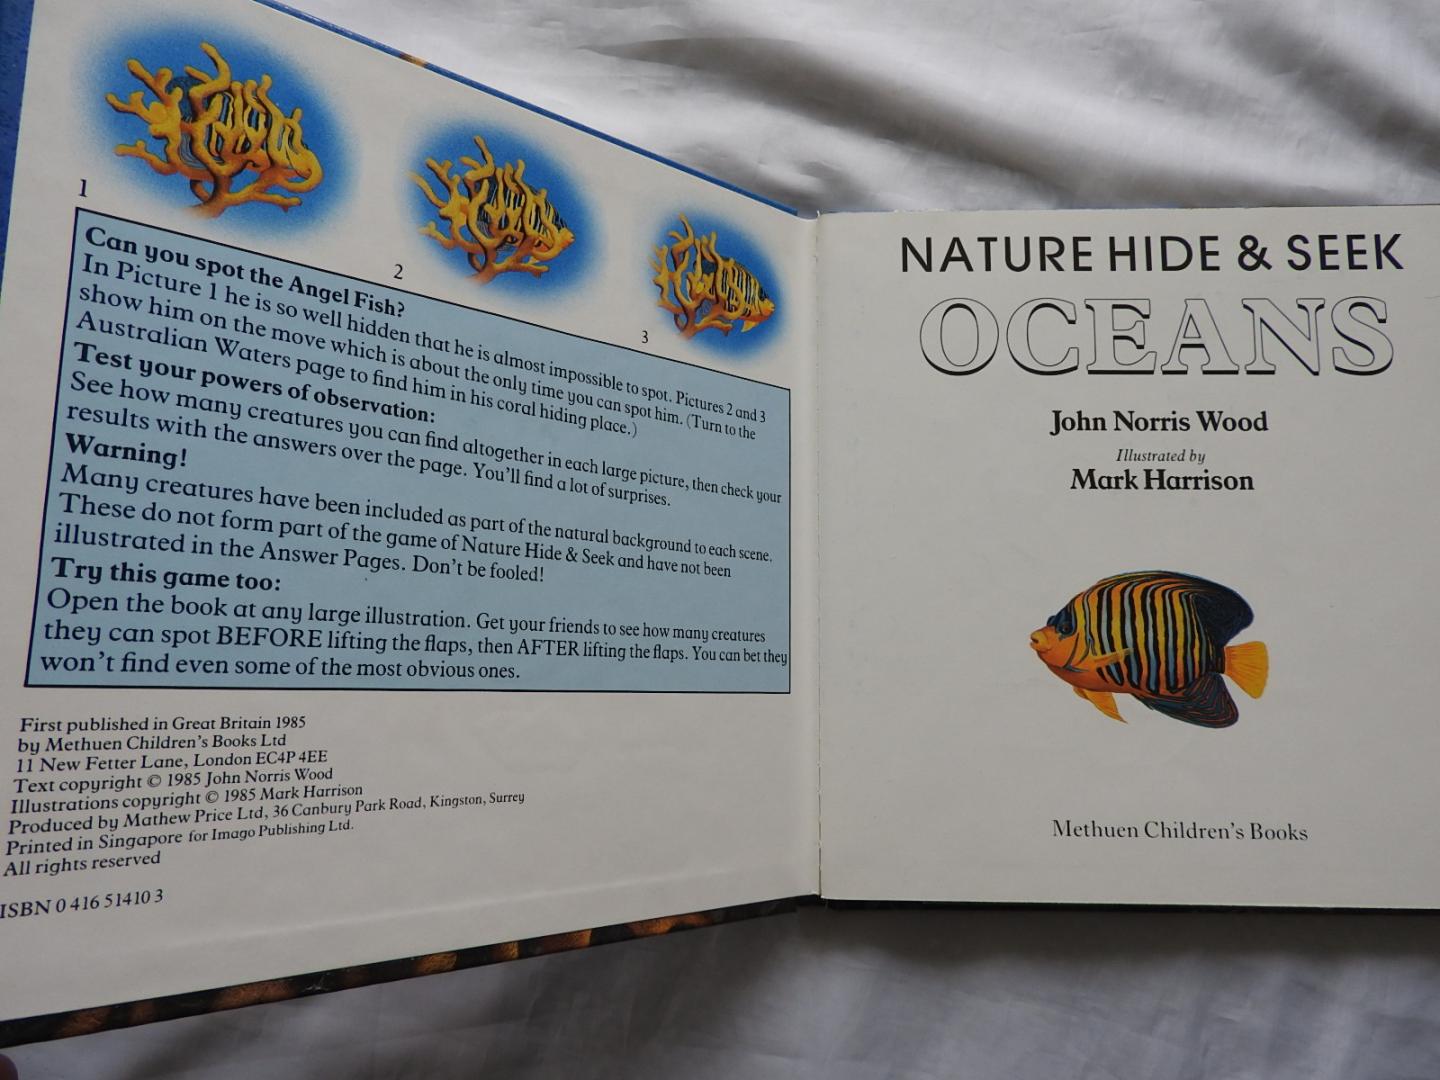 Wood, John Norris illustrated by Mark Harrison - Nature Hide & Seek - Oceans - Nature Hide and Seek